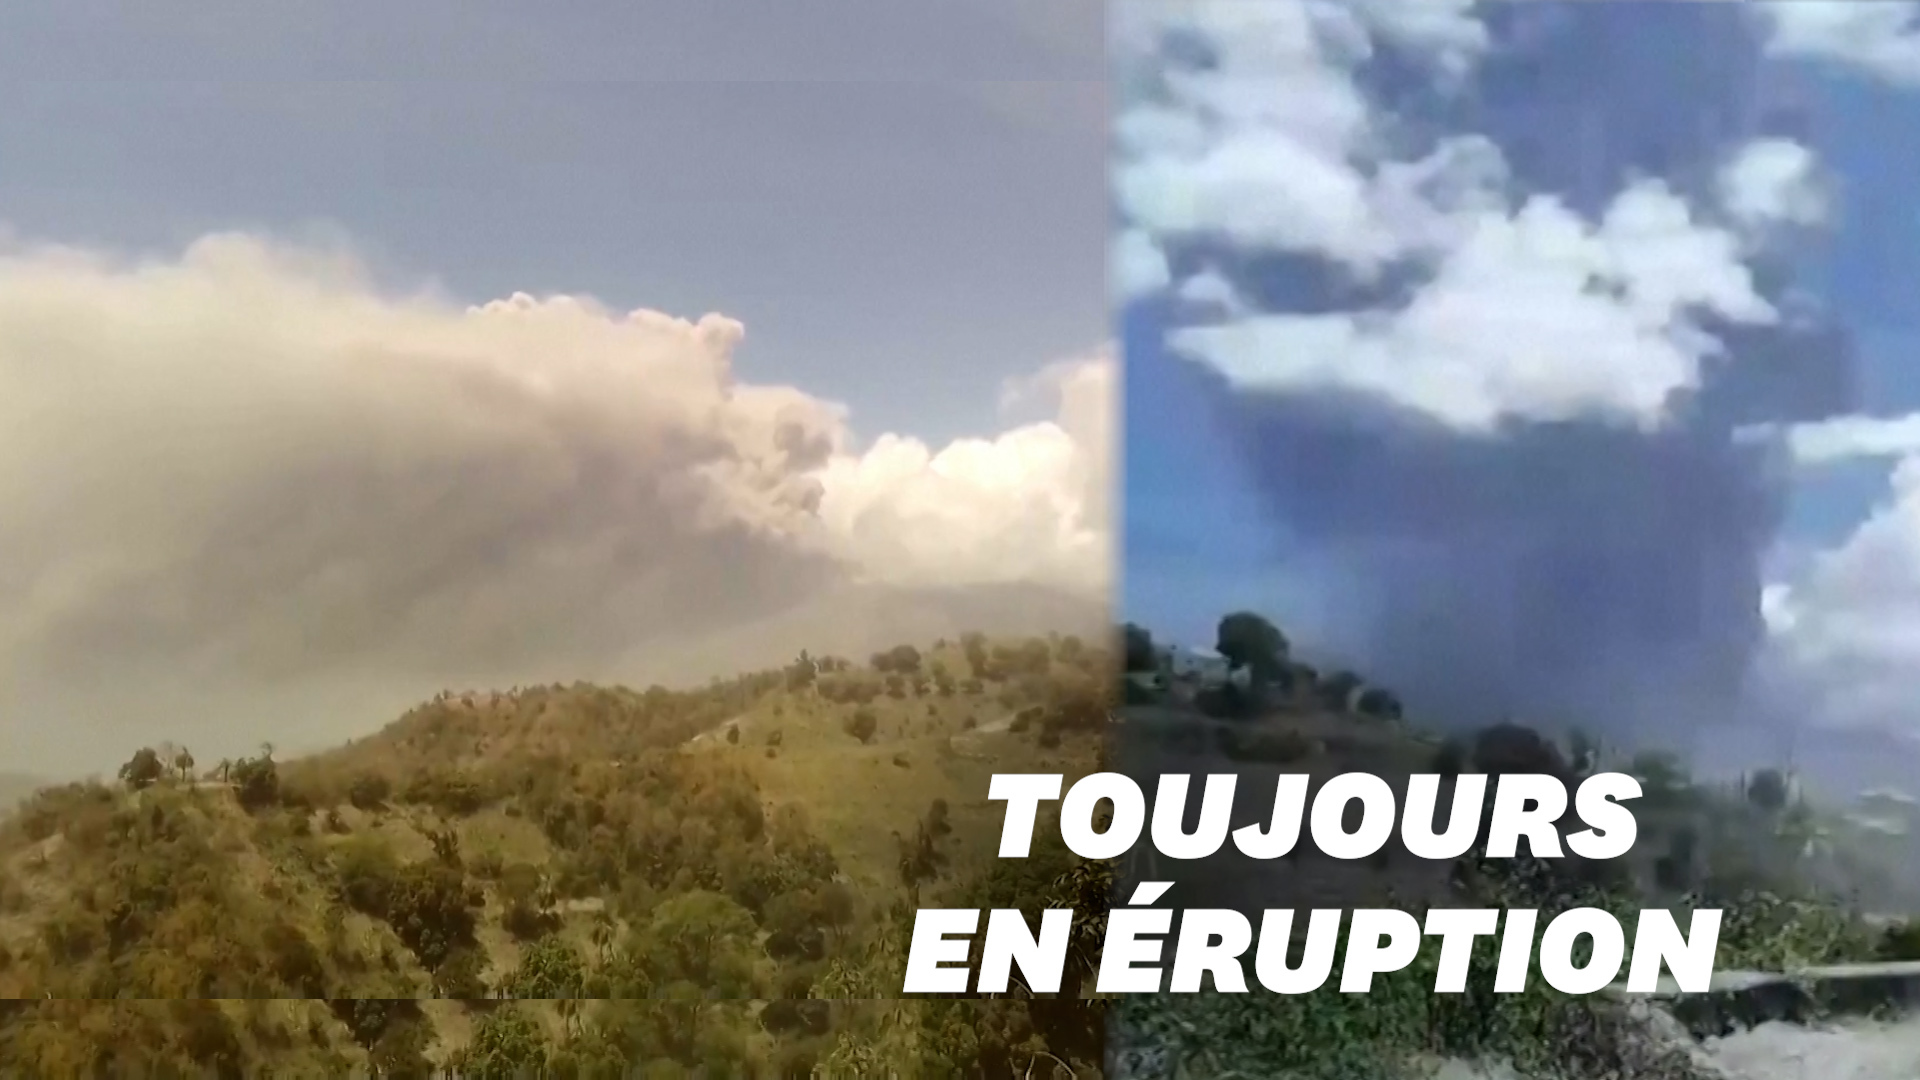 L'éruption du volcan La Soufrière continue sur l'île Saint-Vincent